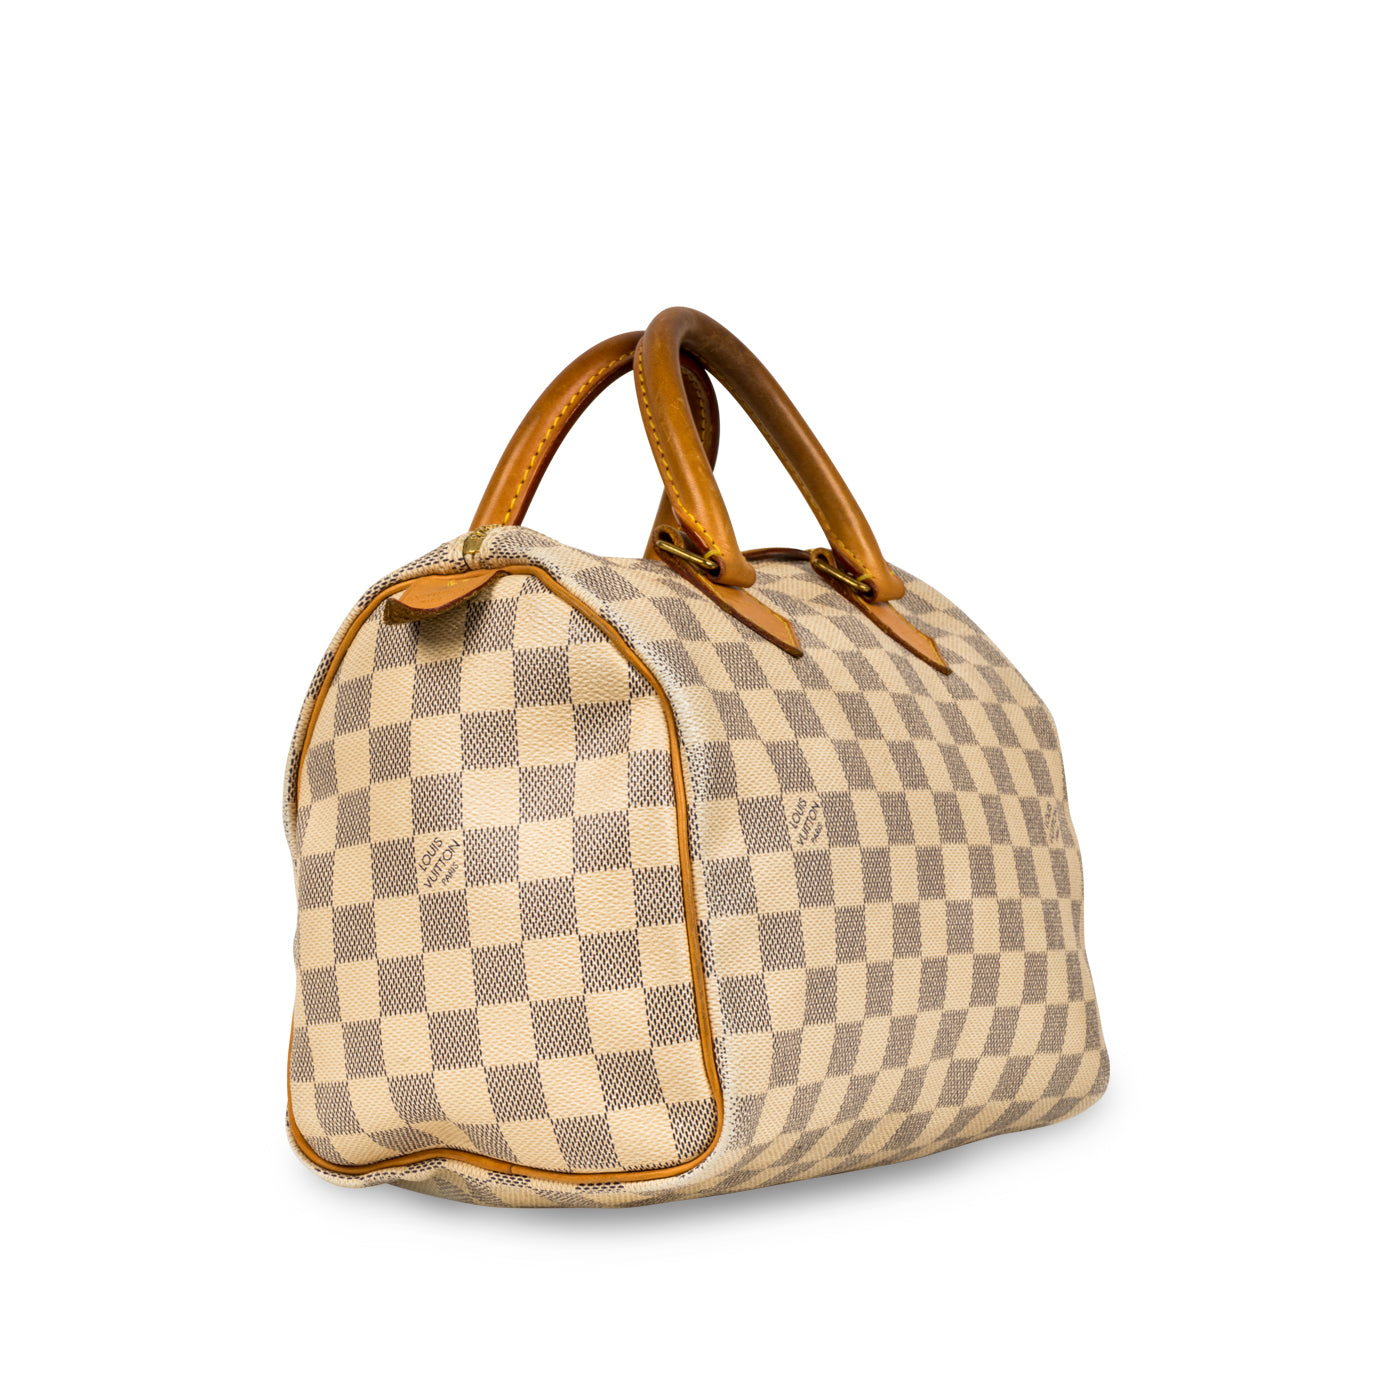 Suedette Singular Style Leather Handbag Organizer for Louis Vuitton Speedy  25, Speedy 30, Speedy 35 and Speedy 40